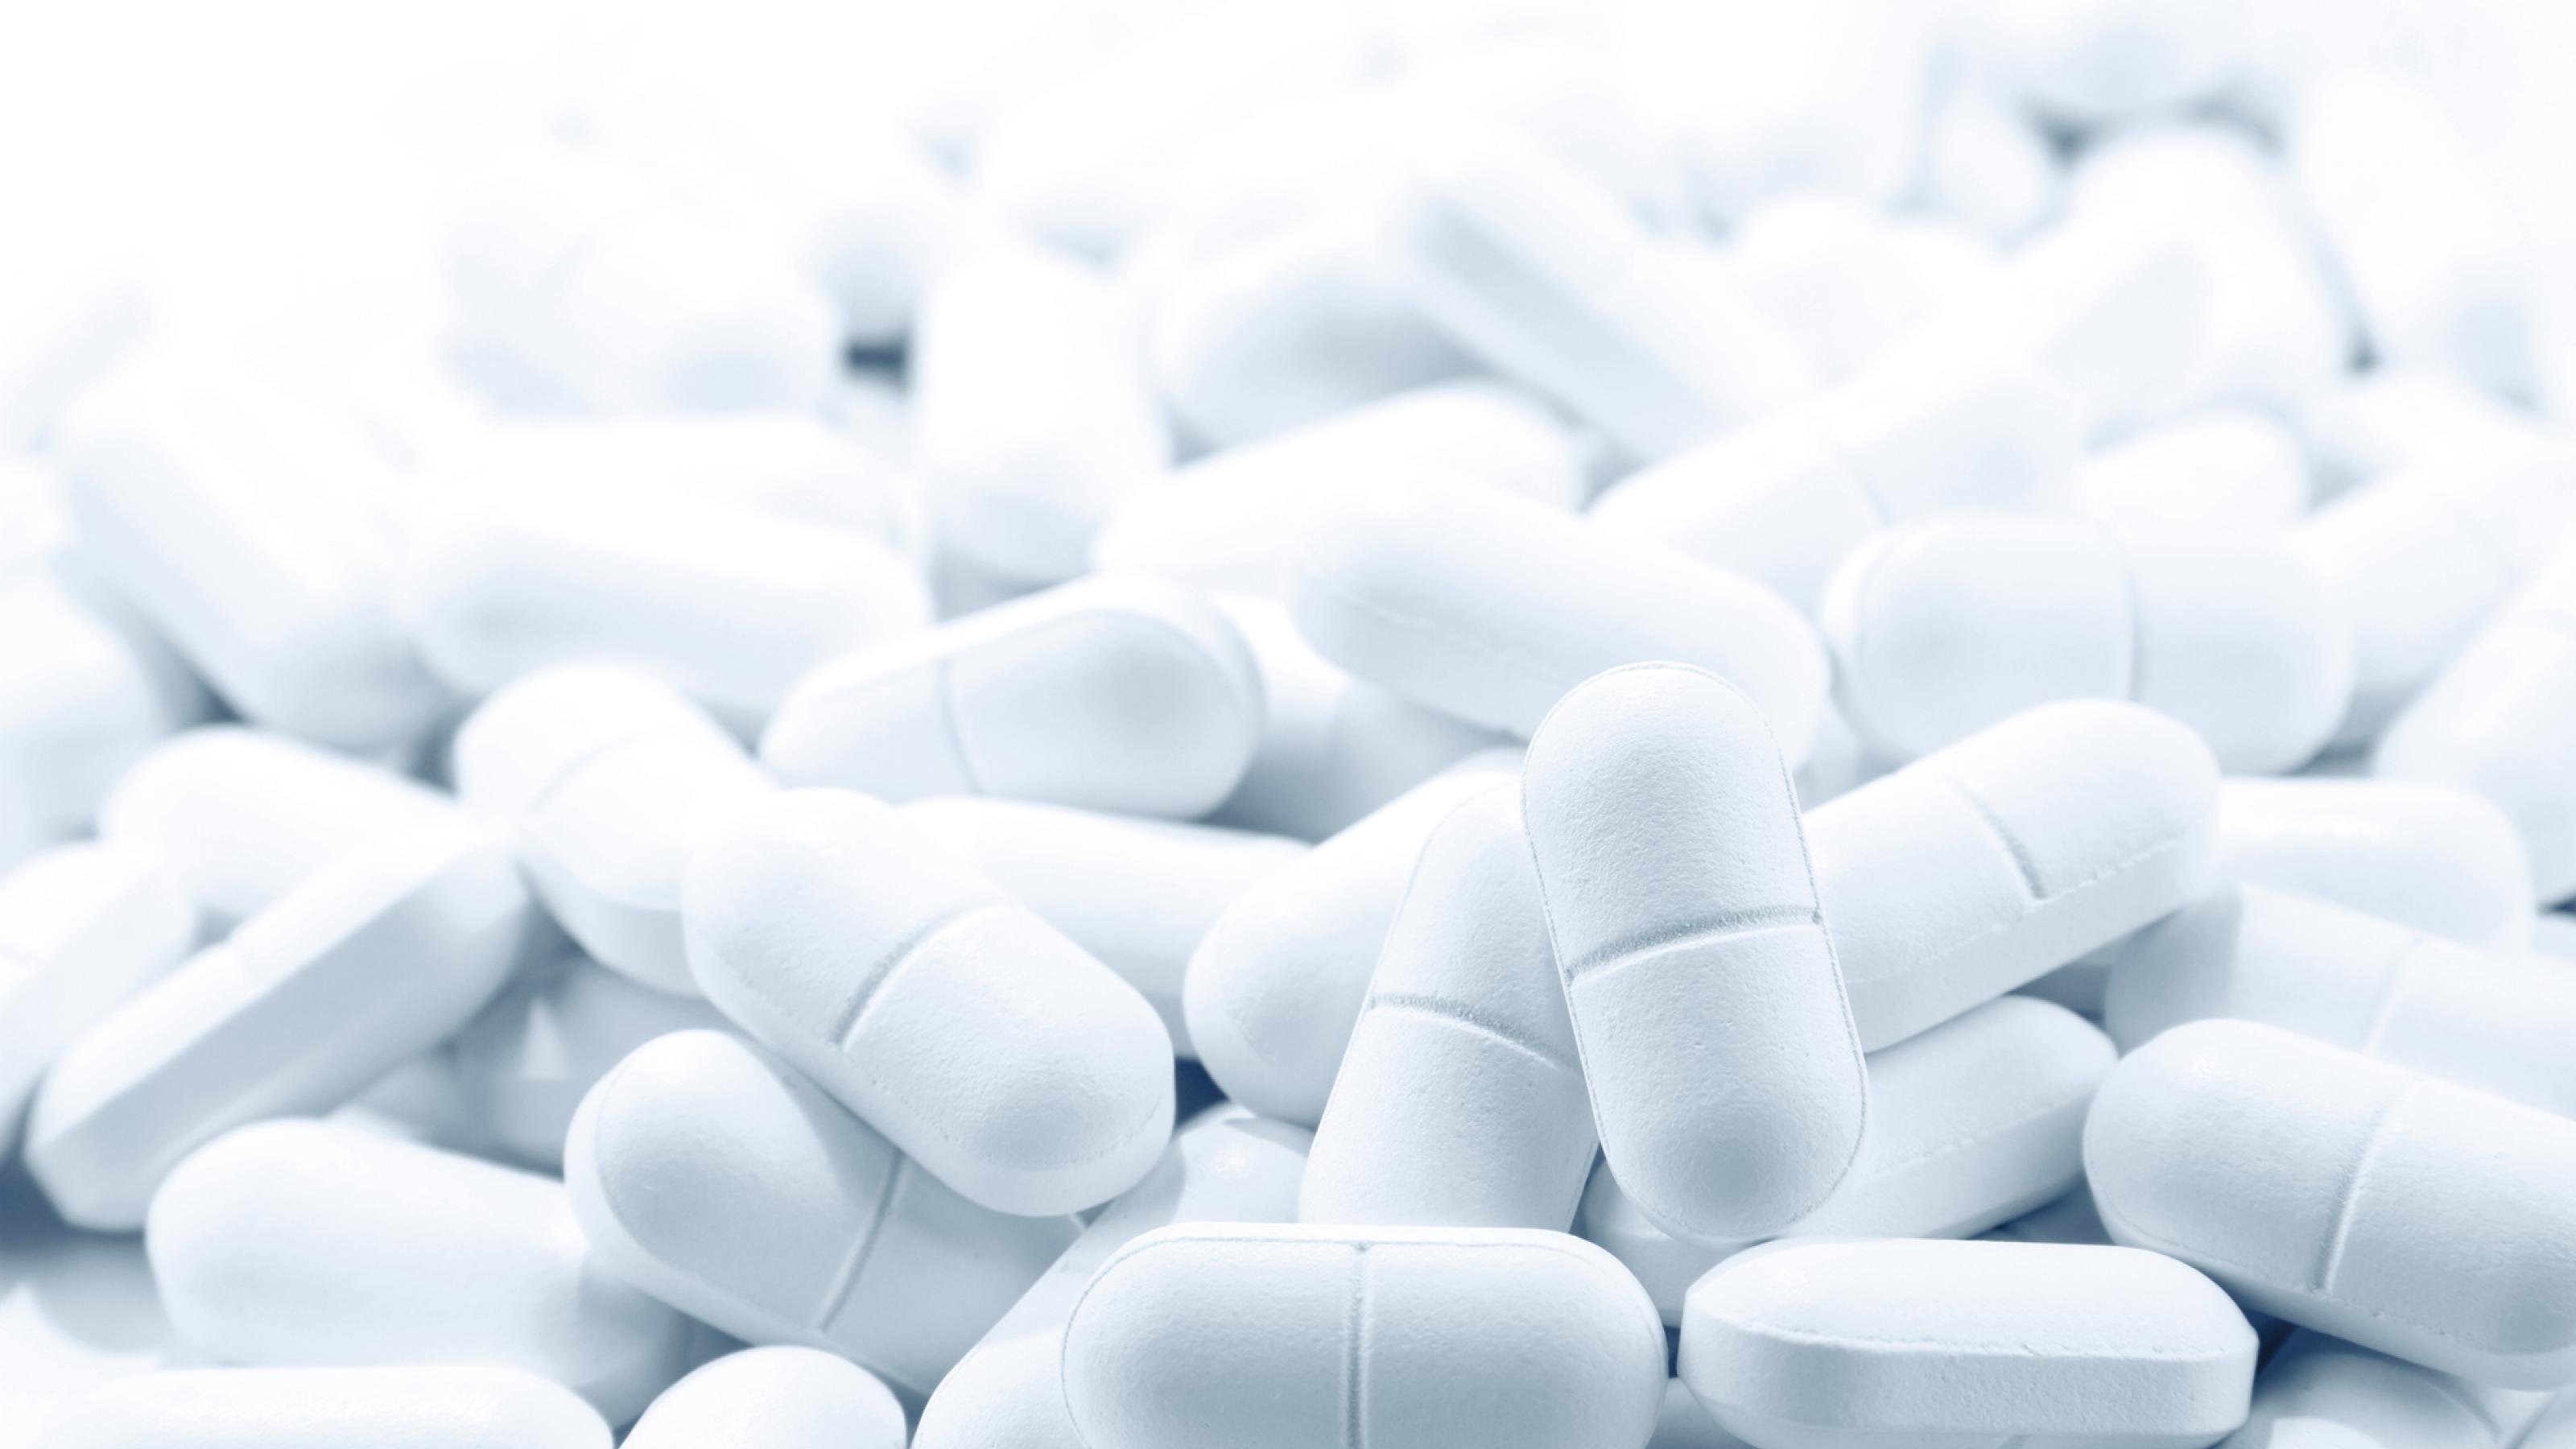 Das Bild zeigt eine große Zahl von weißen Tabletten auf einem Haufen. Das soll symbolisieren, dass es bisher keinen Wirkstoff gibt, aber mit Hochdruck nach ihm gesucht wird.